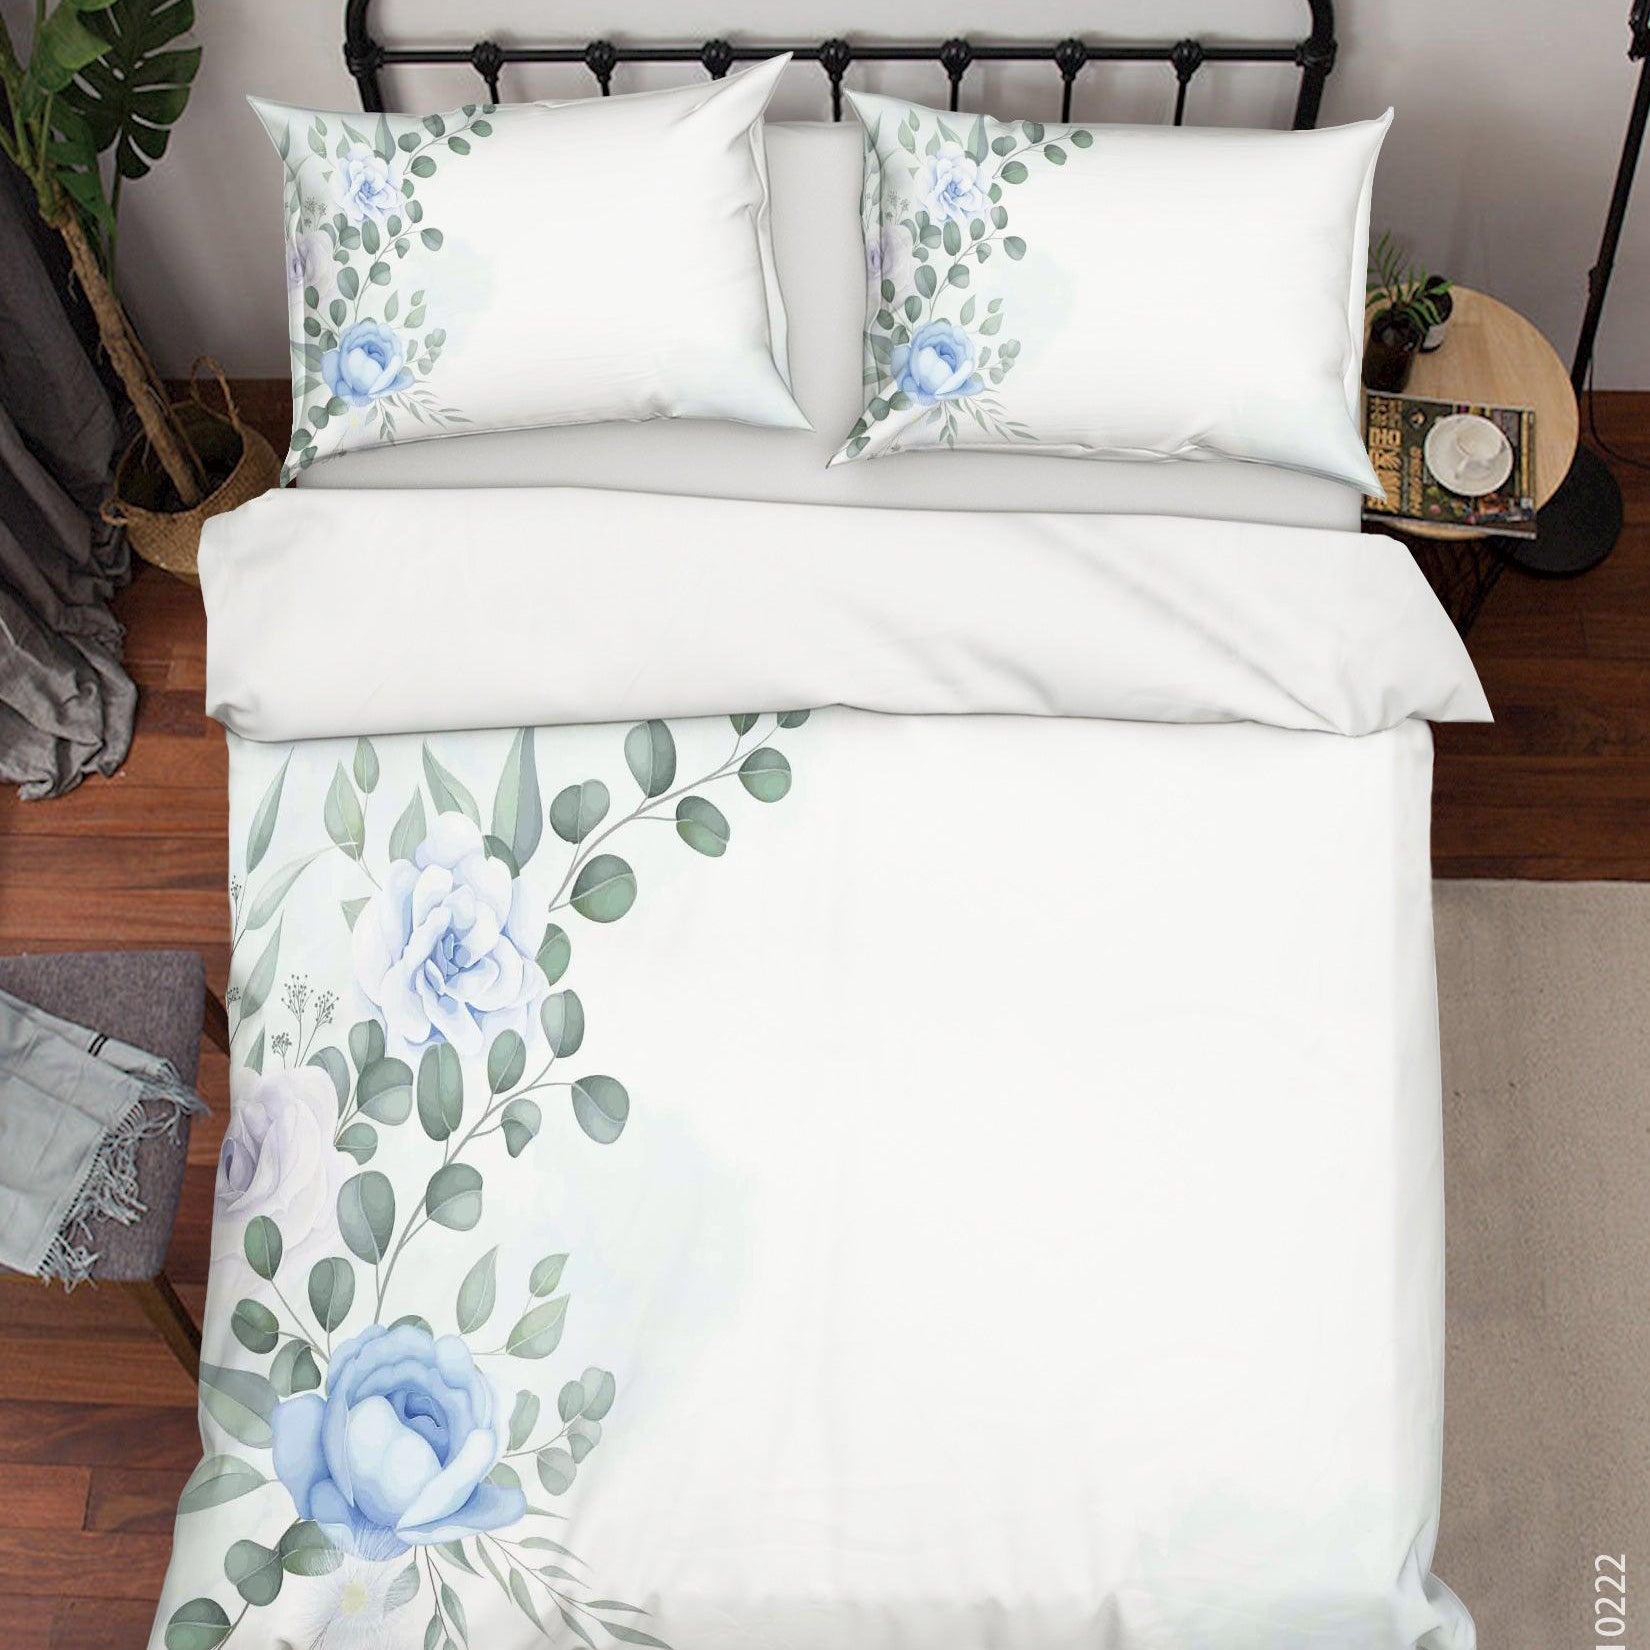 3D Watercolor Floral Leaves Quilt Cover Set Bedding Set Duvet Cover Pillowcases 184- Jess Art Decoration